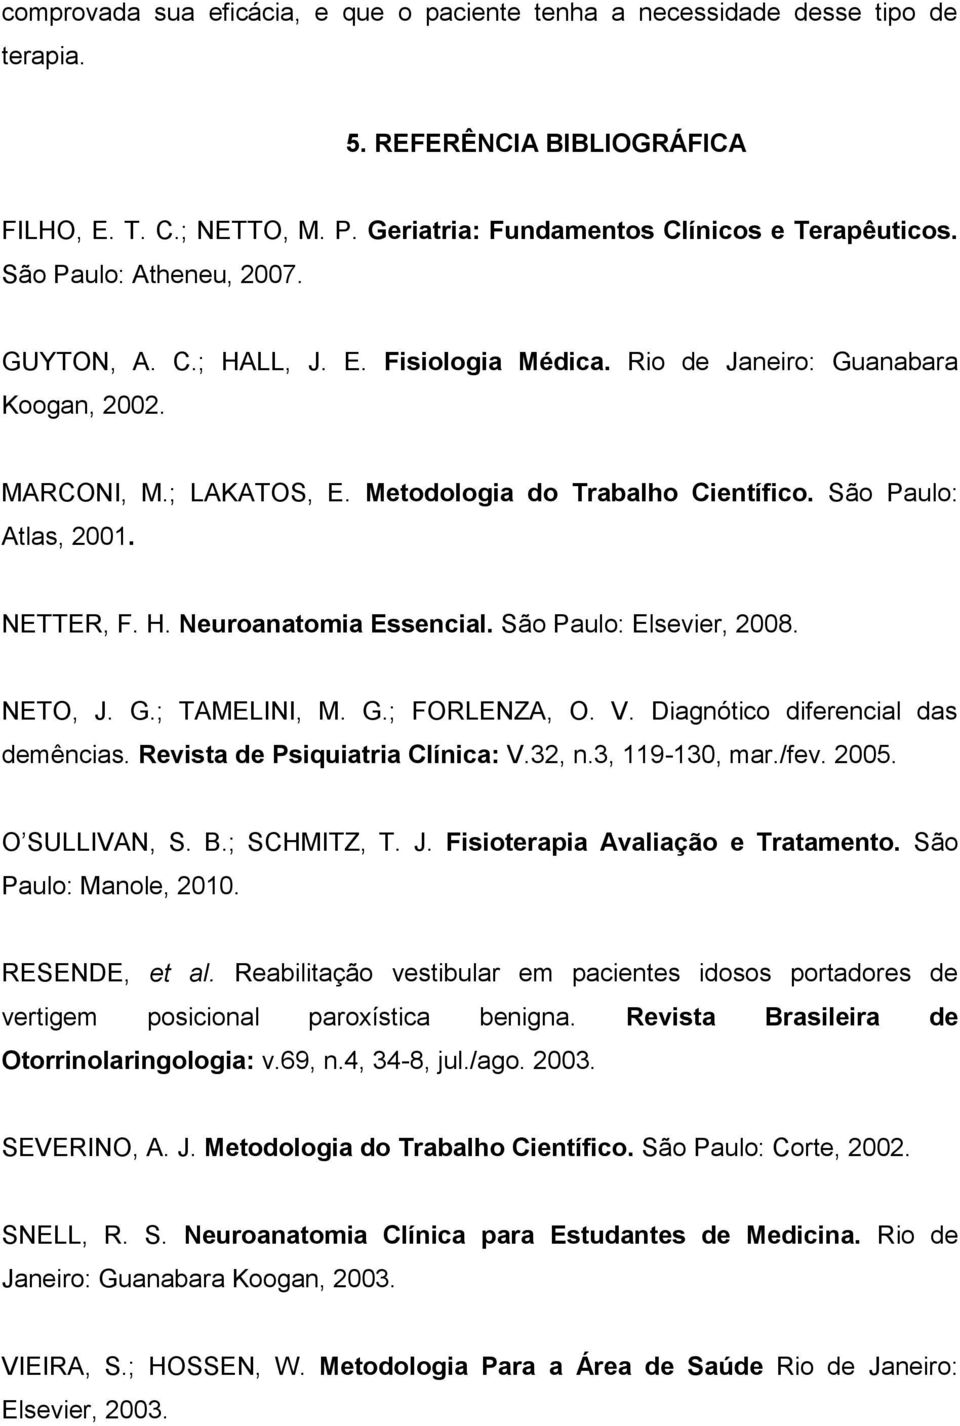 NETTER, F. H. Neuroanatomia Essencial. São Paulo: Elsevier, 2008. NETO, J. G.; TAMELINI, M. G.; FORLENZA, O. V. Diagnótico diferencial das demências. Revista de Psiquiatria Clínica: V.32, n.